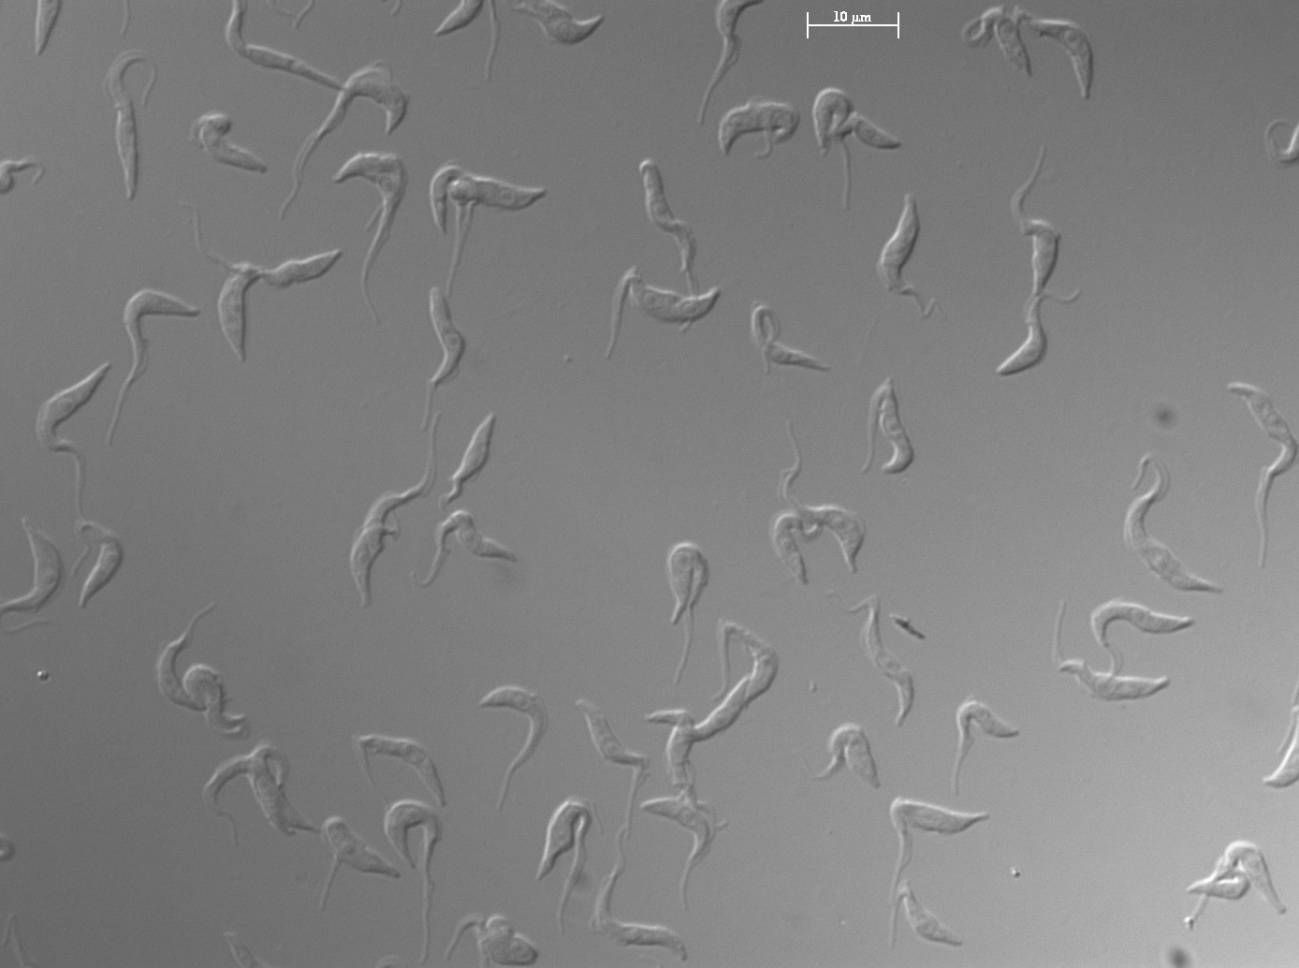 Células de ‘Trypanosoma brucei’ en cultivo observadas al microscopio